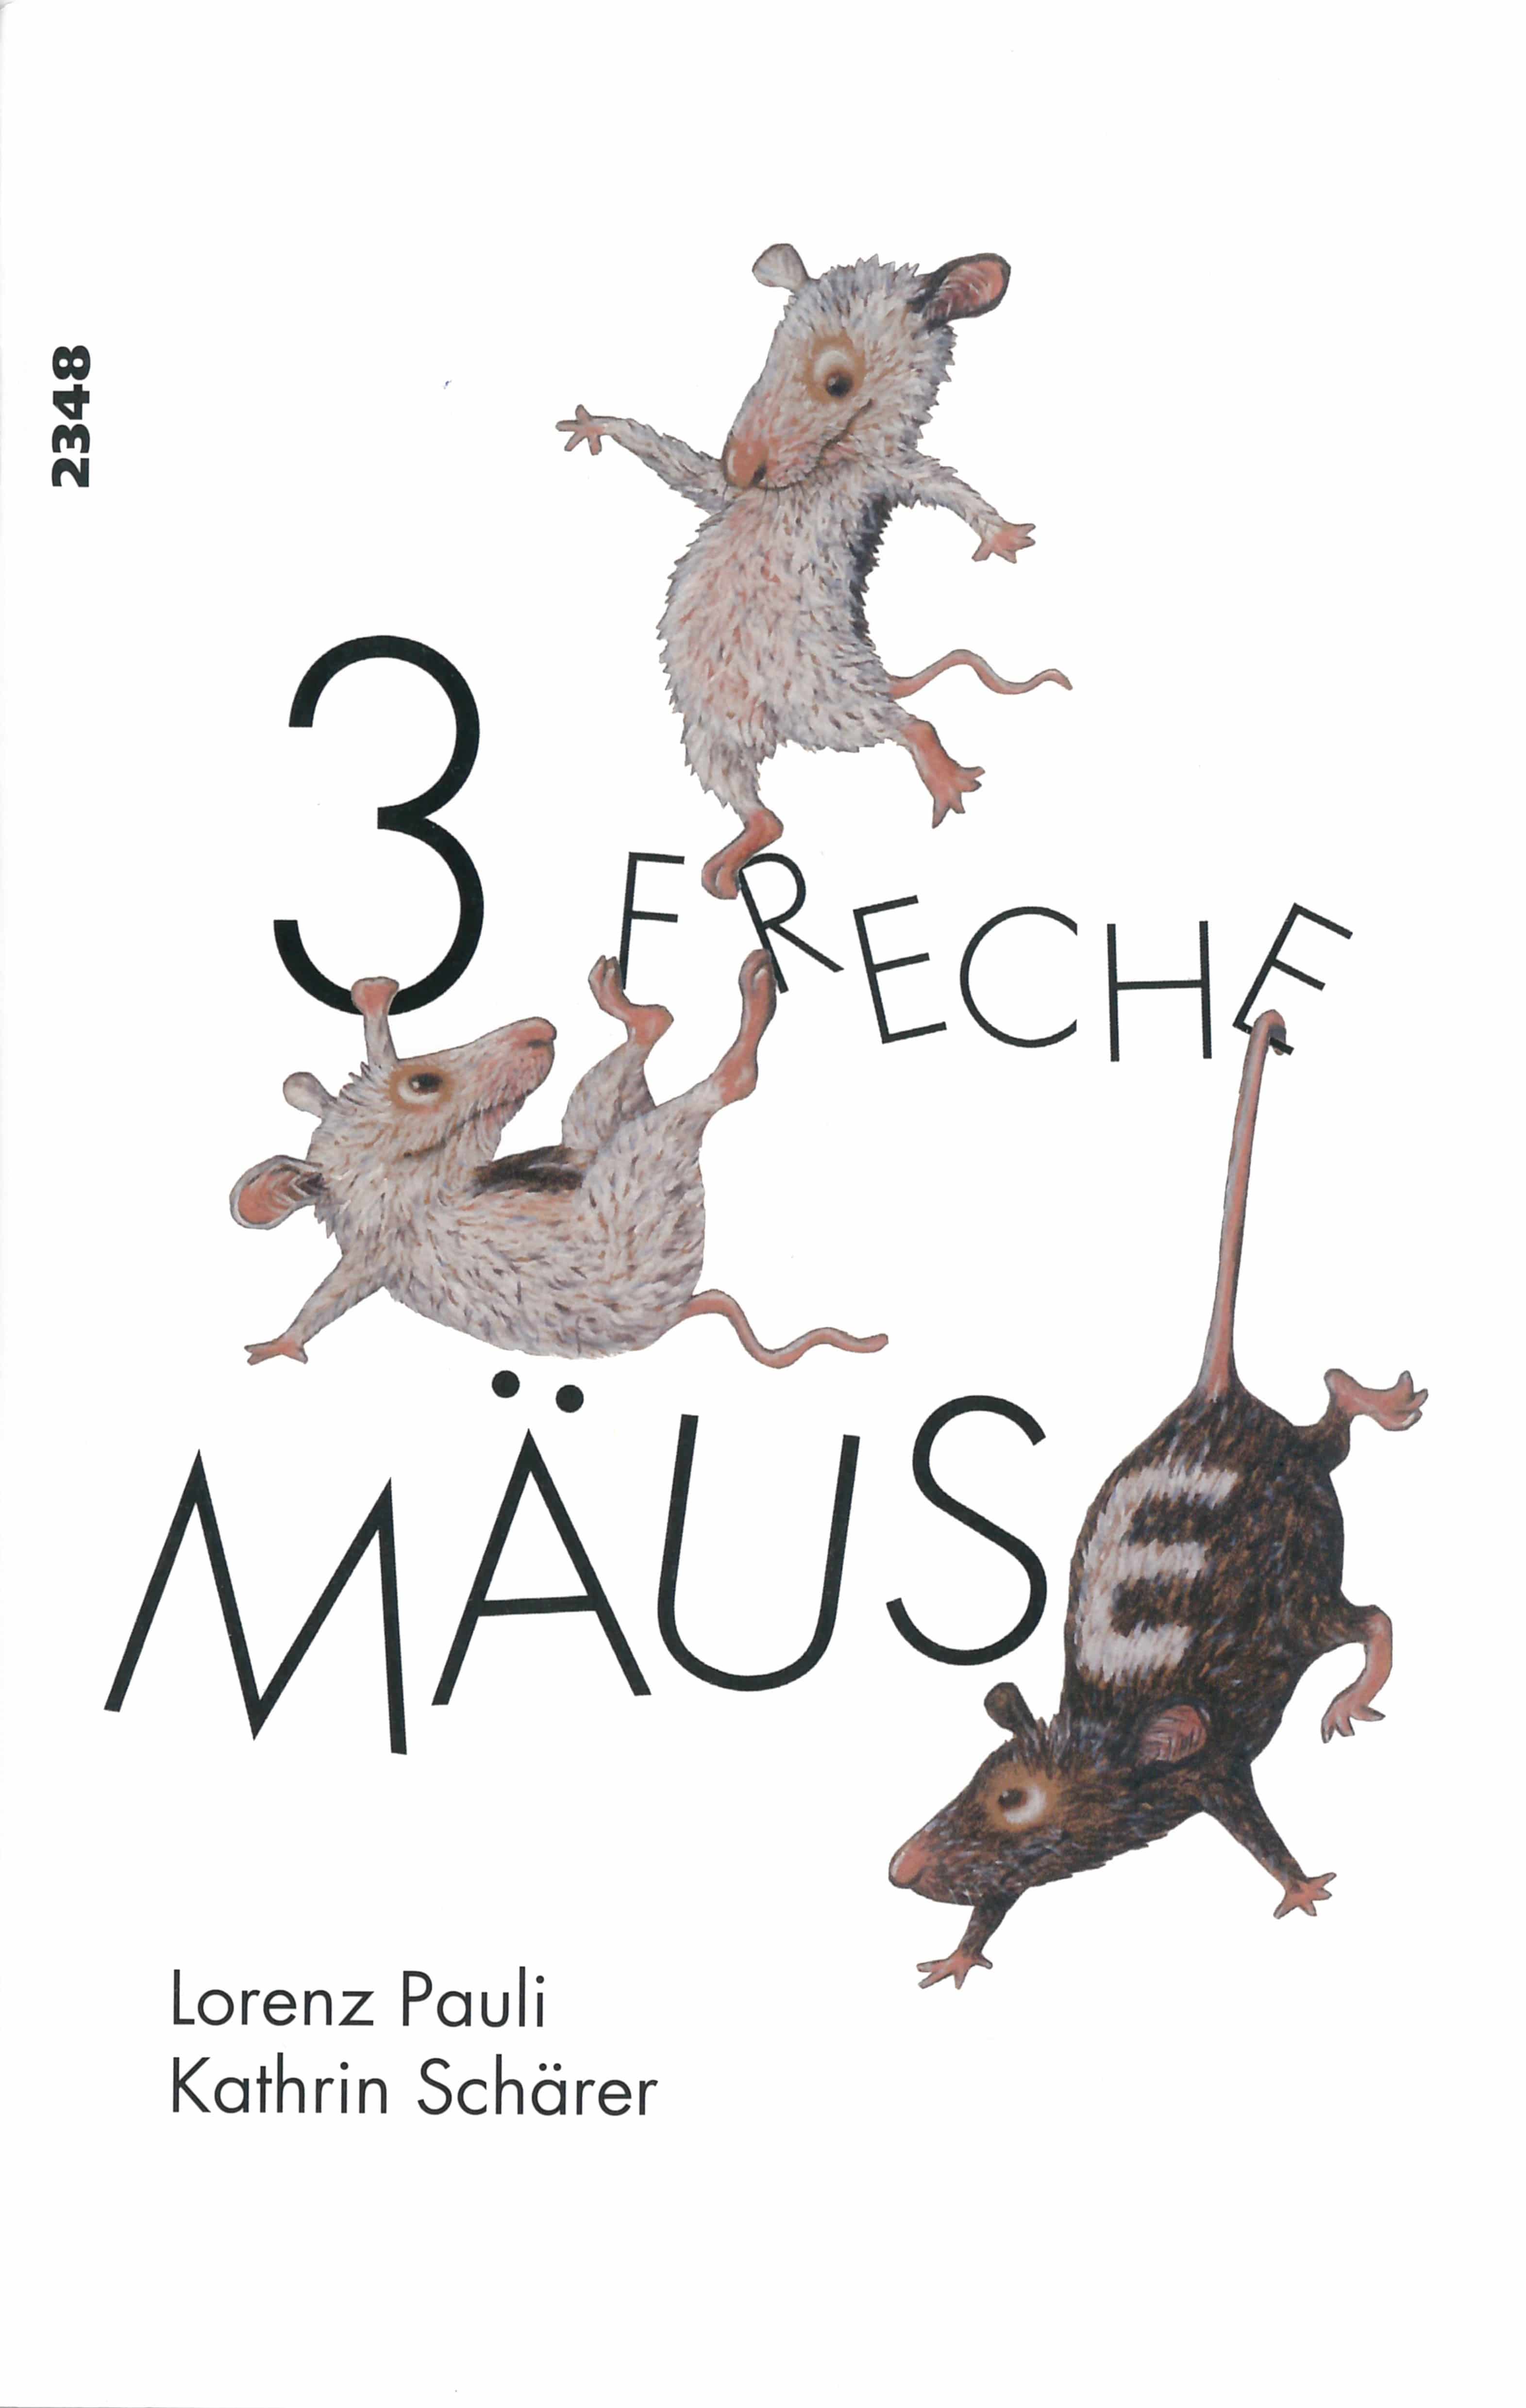 3 freche Maeuse, ein Kinderbuch von Lorenz Pauli, Illustration von Kathrin Schaerer, SJW Verlag, Buchstabengeschichte